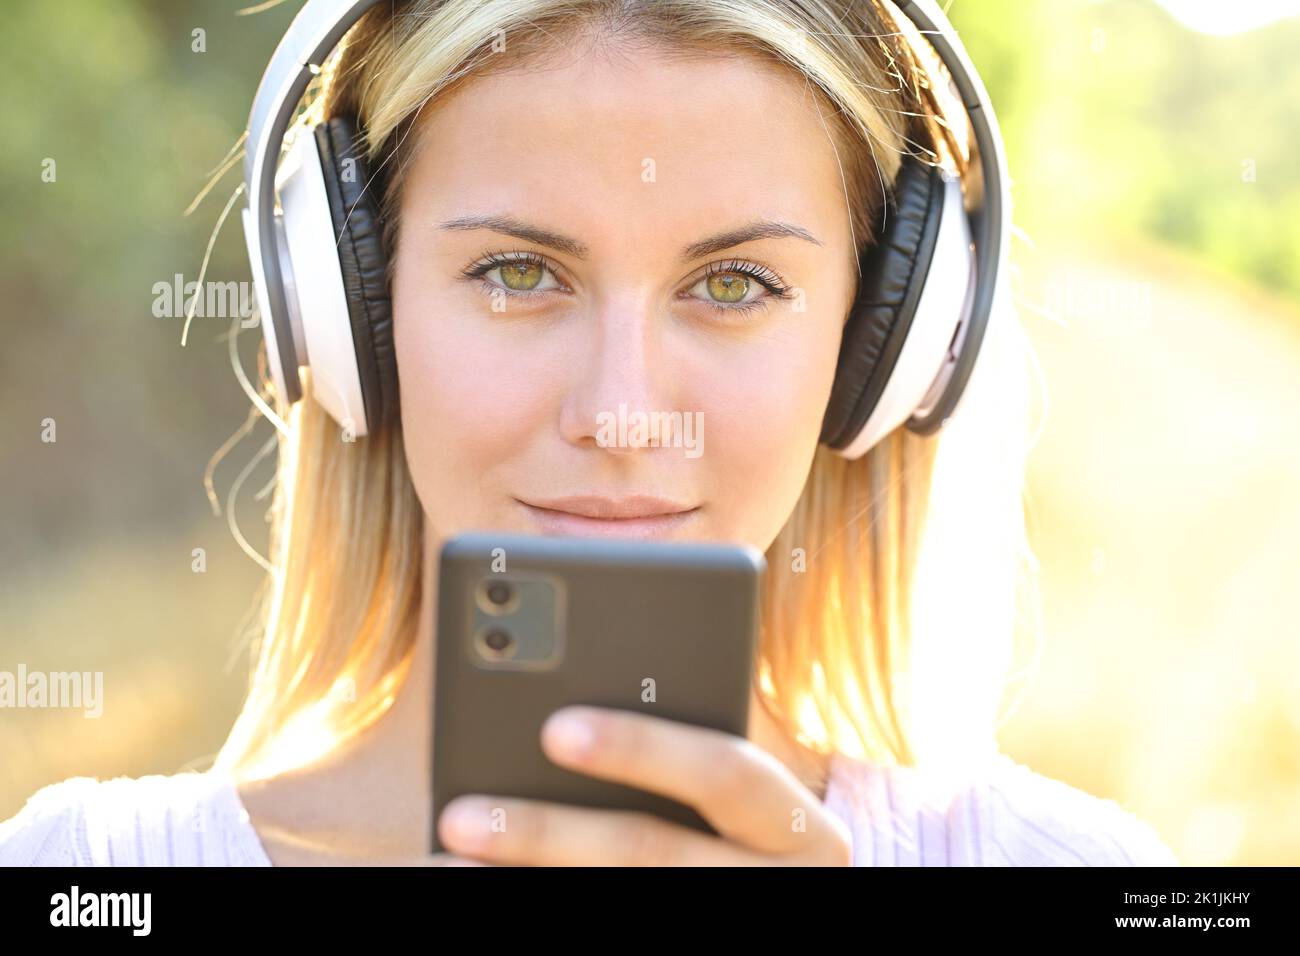 Immagine frontale di una donna che indossa cuffie wireless con uno smartphone che ti guarda Foto Stock